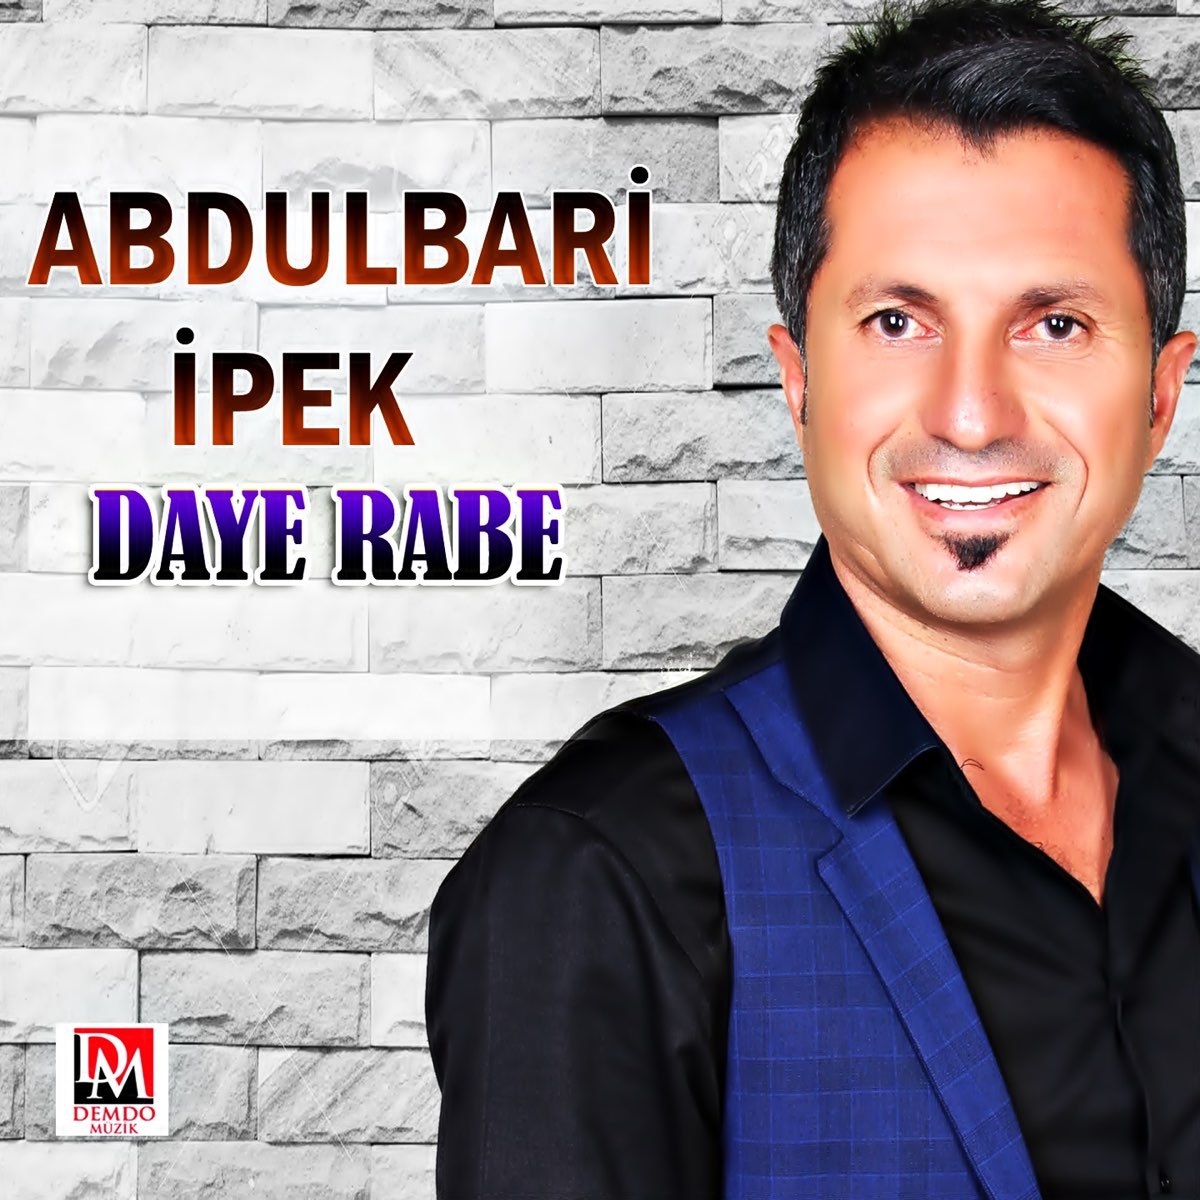 Daye Rabe - Album by Abdulbari İpek - Apple Music